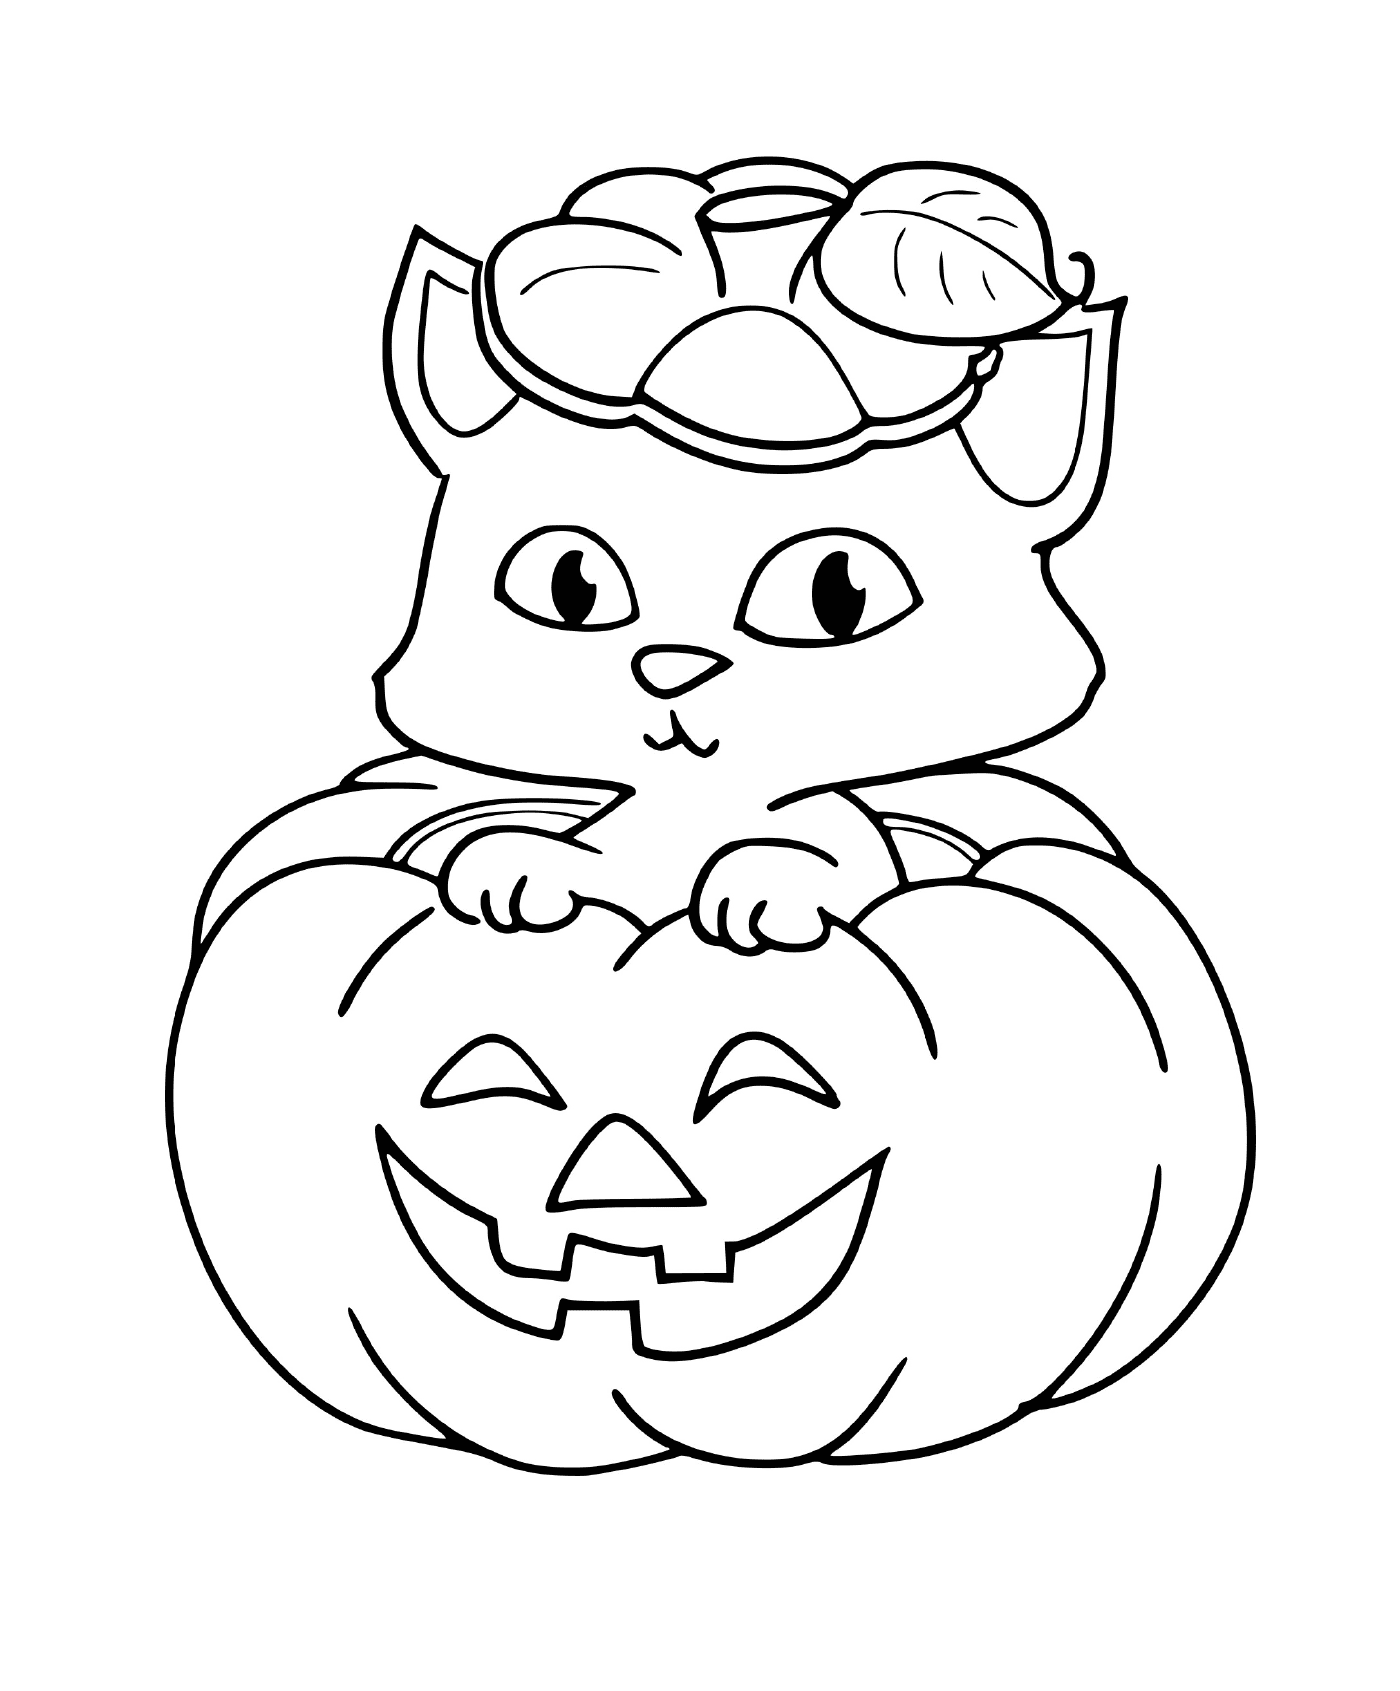  Cat sitting on a pumpkin 